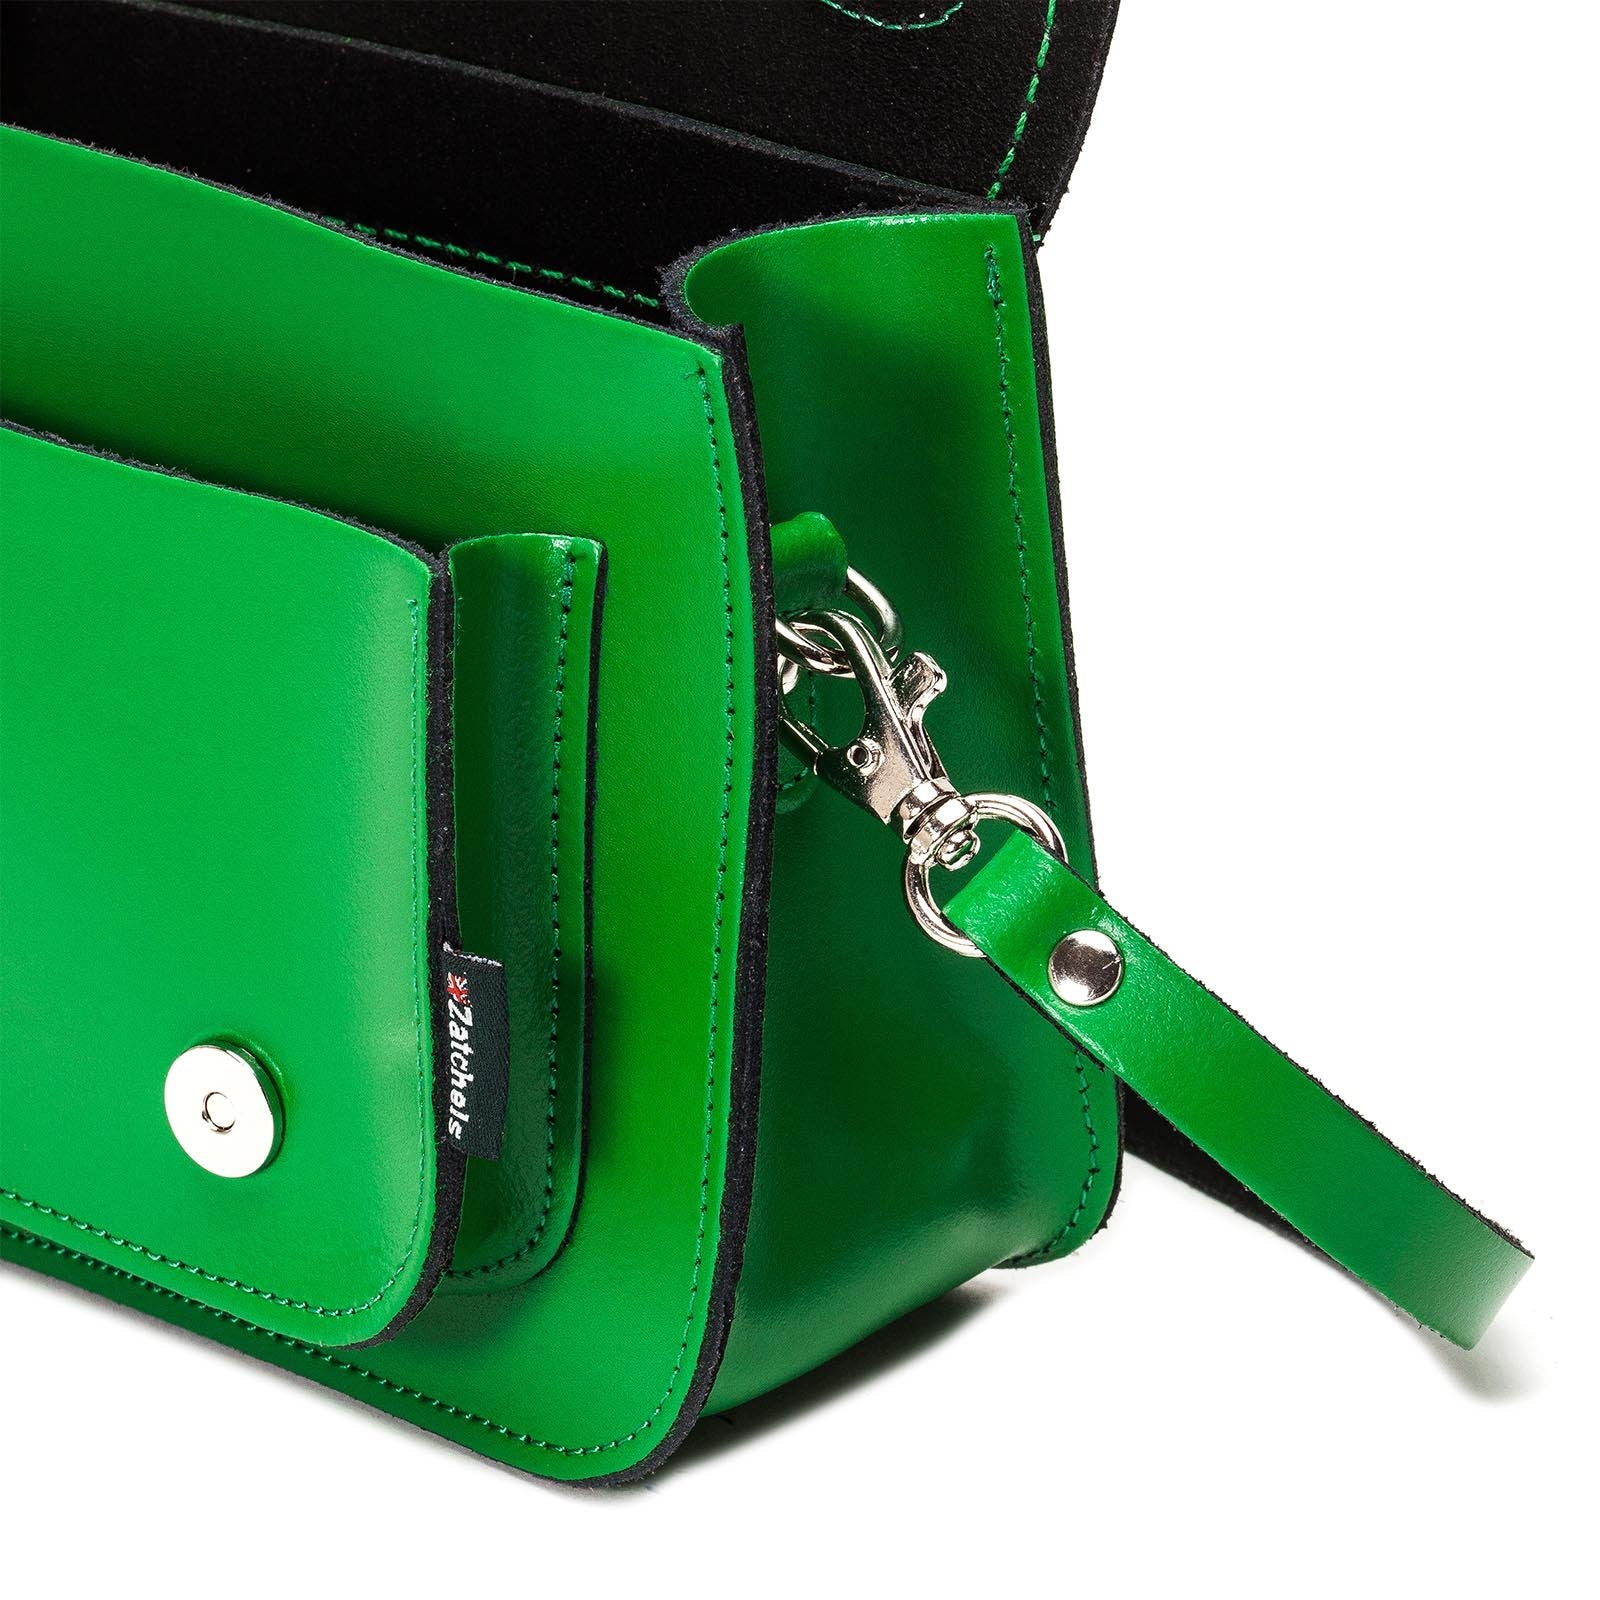 Green Leather MICRO Satchel by Zatchels‰ã¢ | 18cm/7in | BUY ONLINE